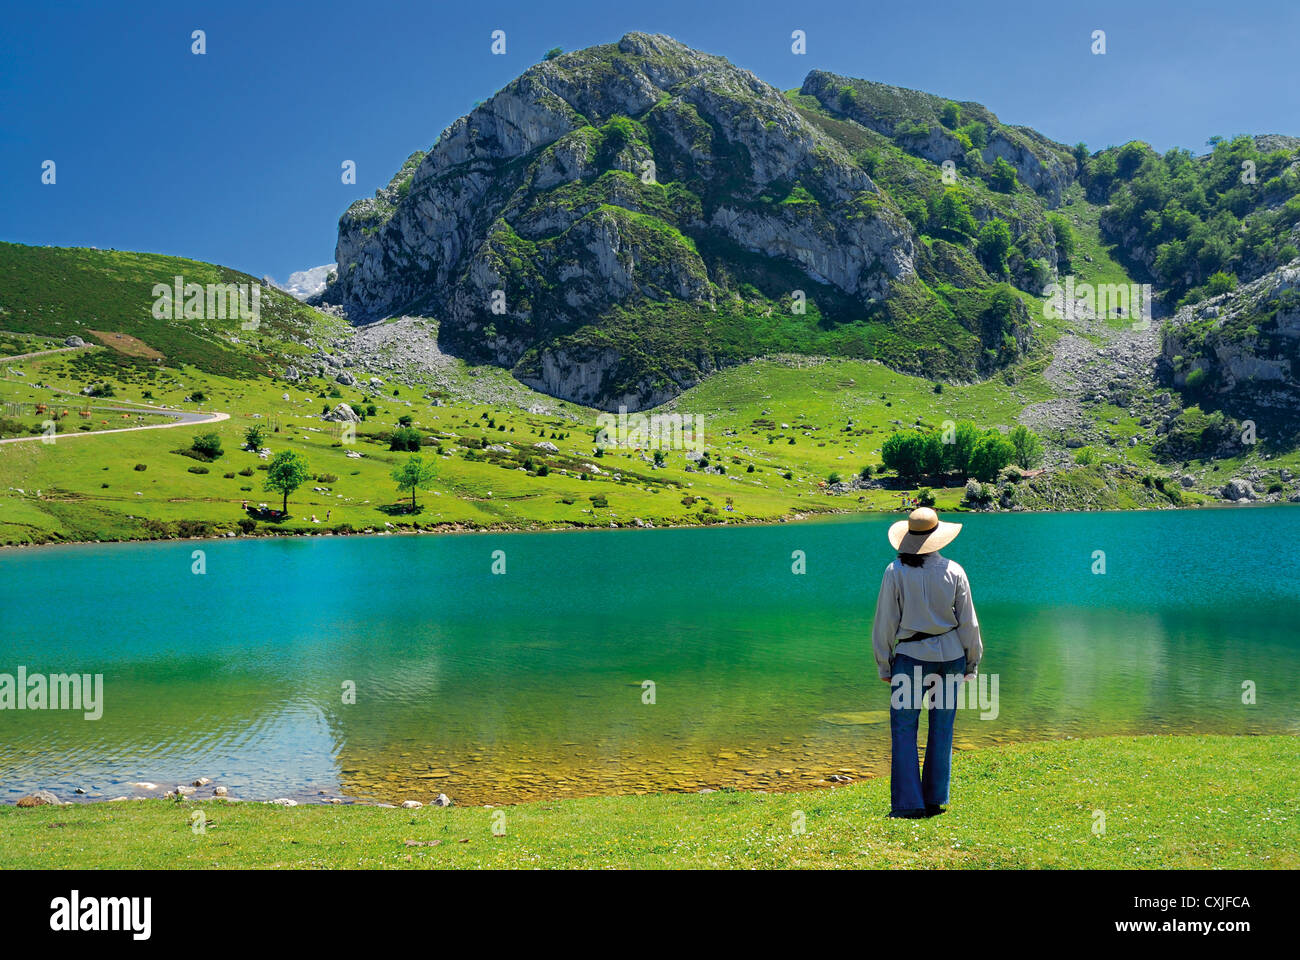 Spagna: donna gode di vista sulla montagna al lago Enol nel parco naturale Picos de Europa Foto Stock